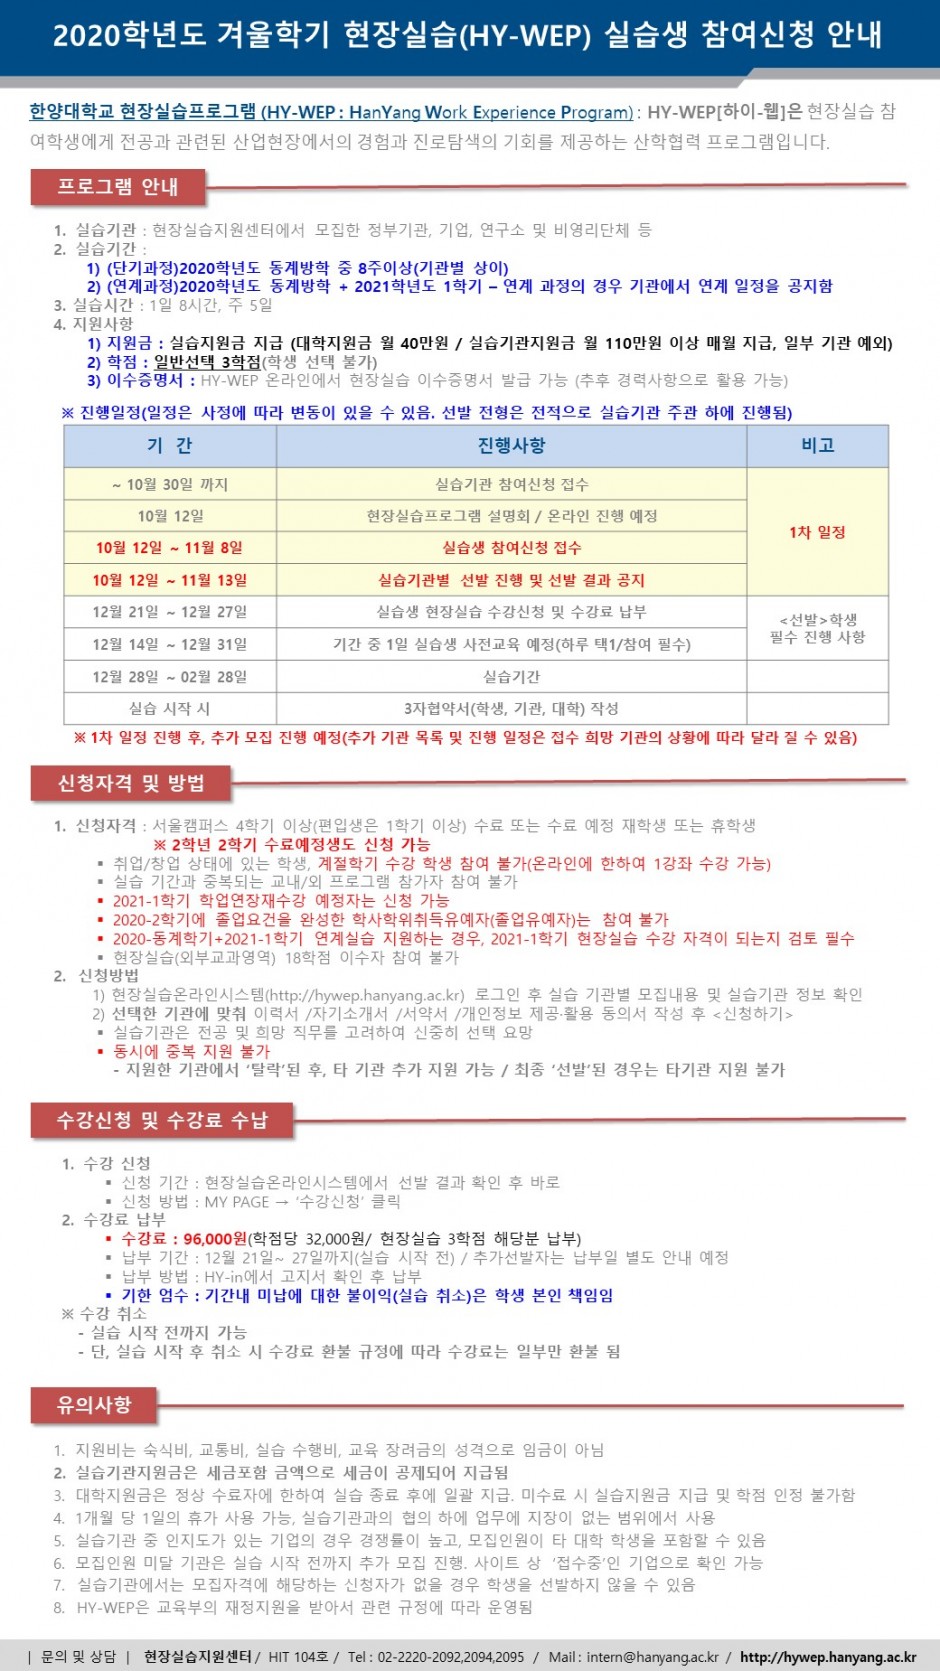 붙임4. (교내용)2020 겨울학기 HY-WEP 실습생 참여신청 안내문